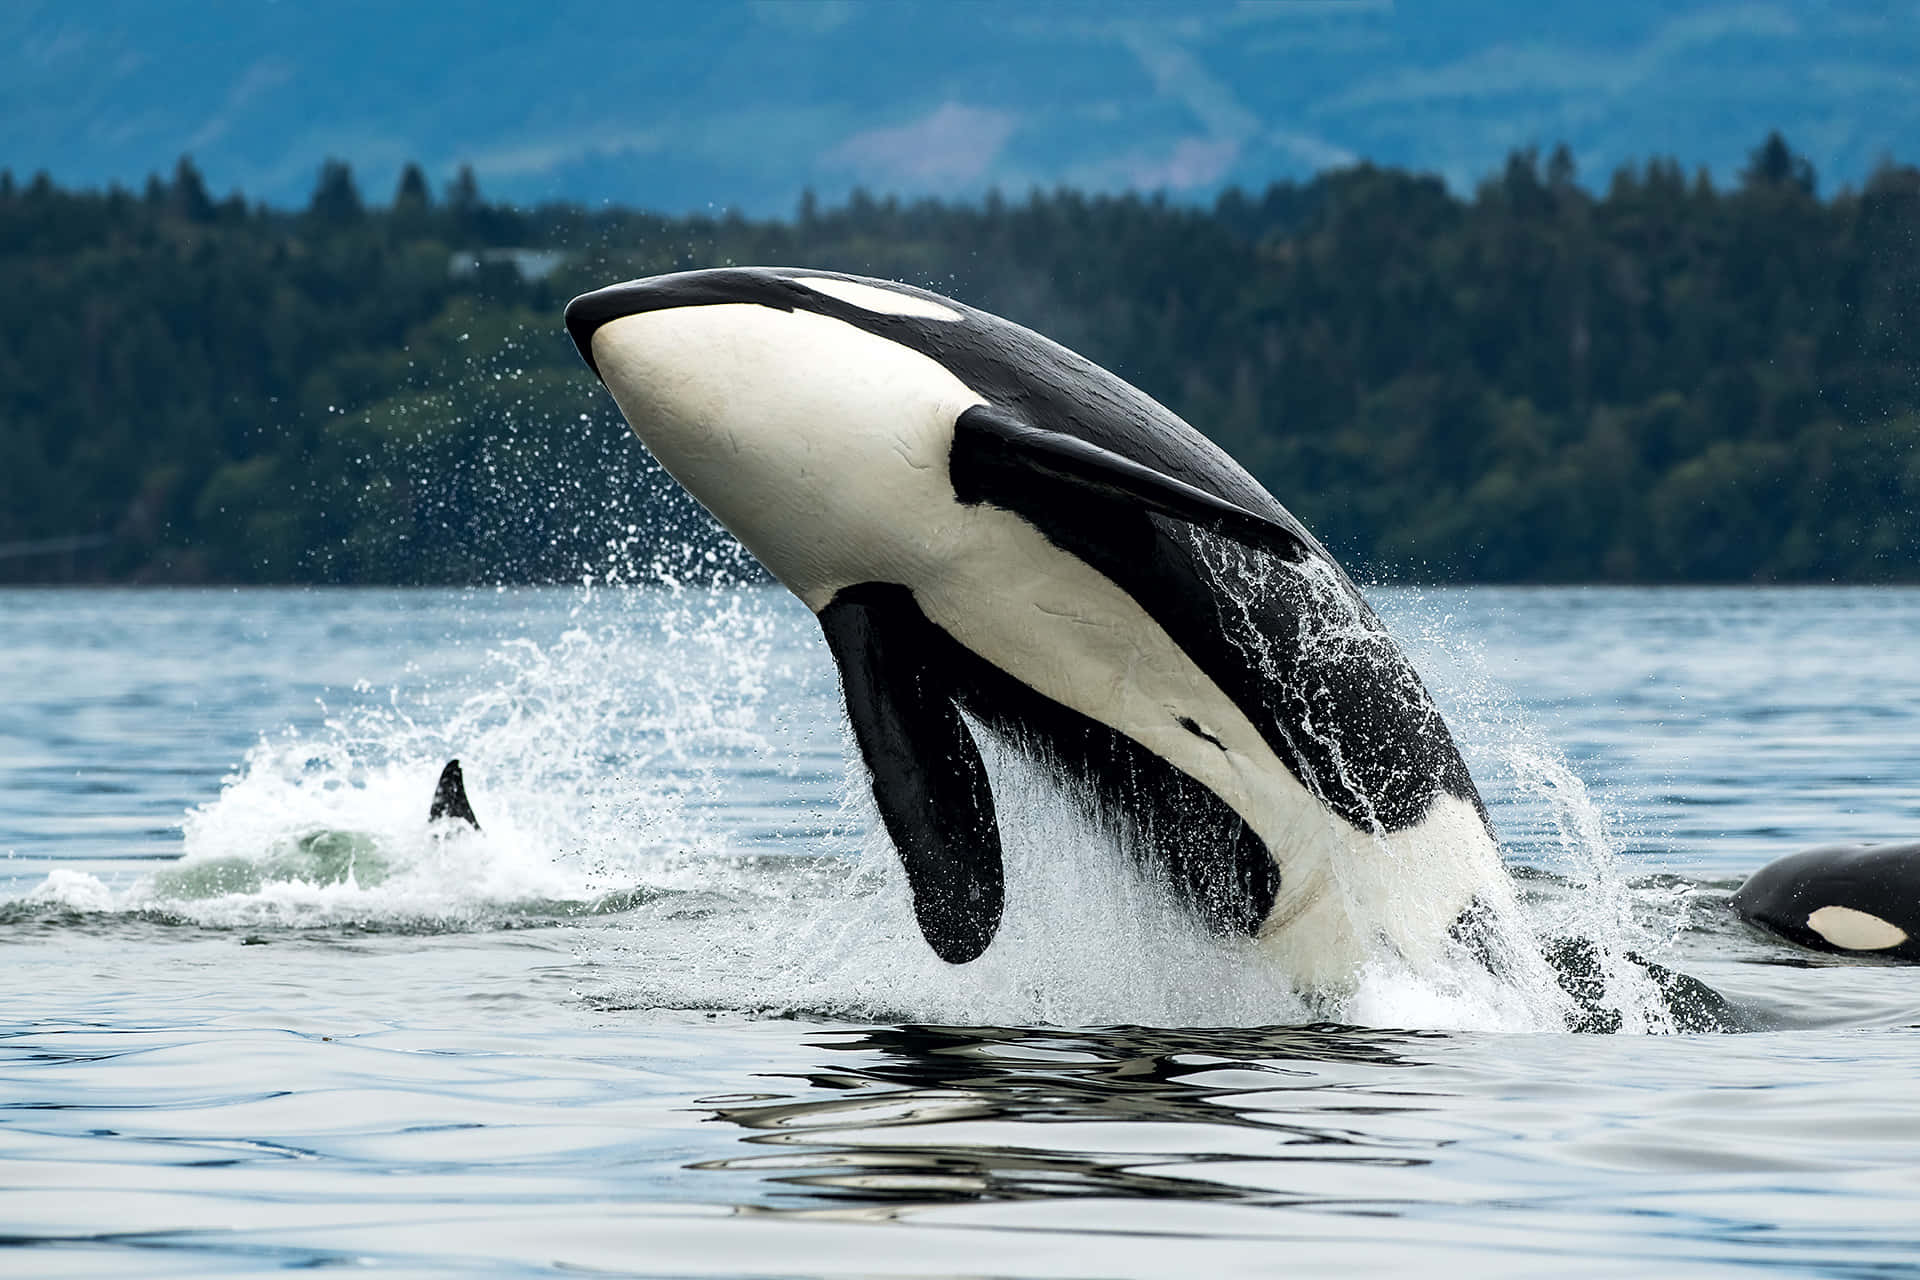 Imagende Grupo De Orcas Asesinas